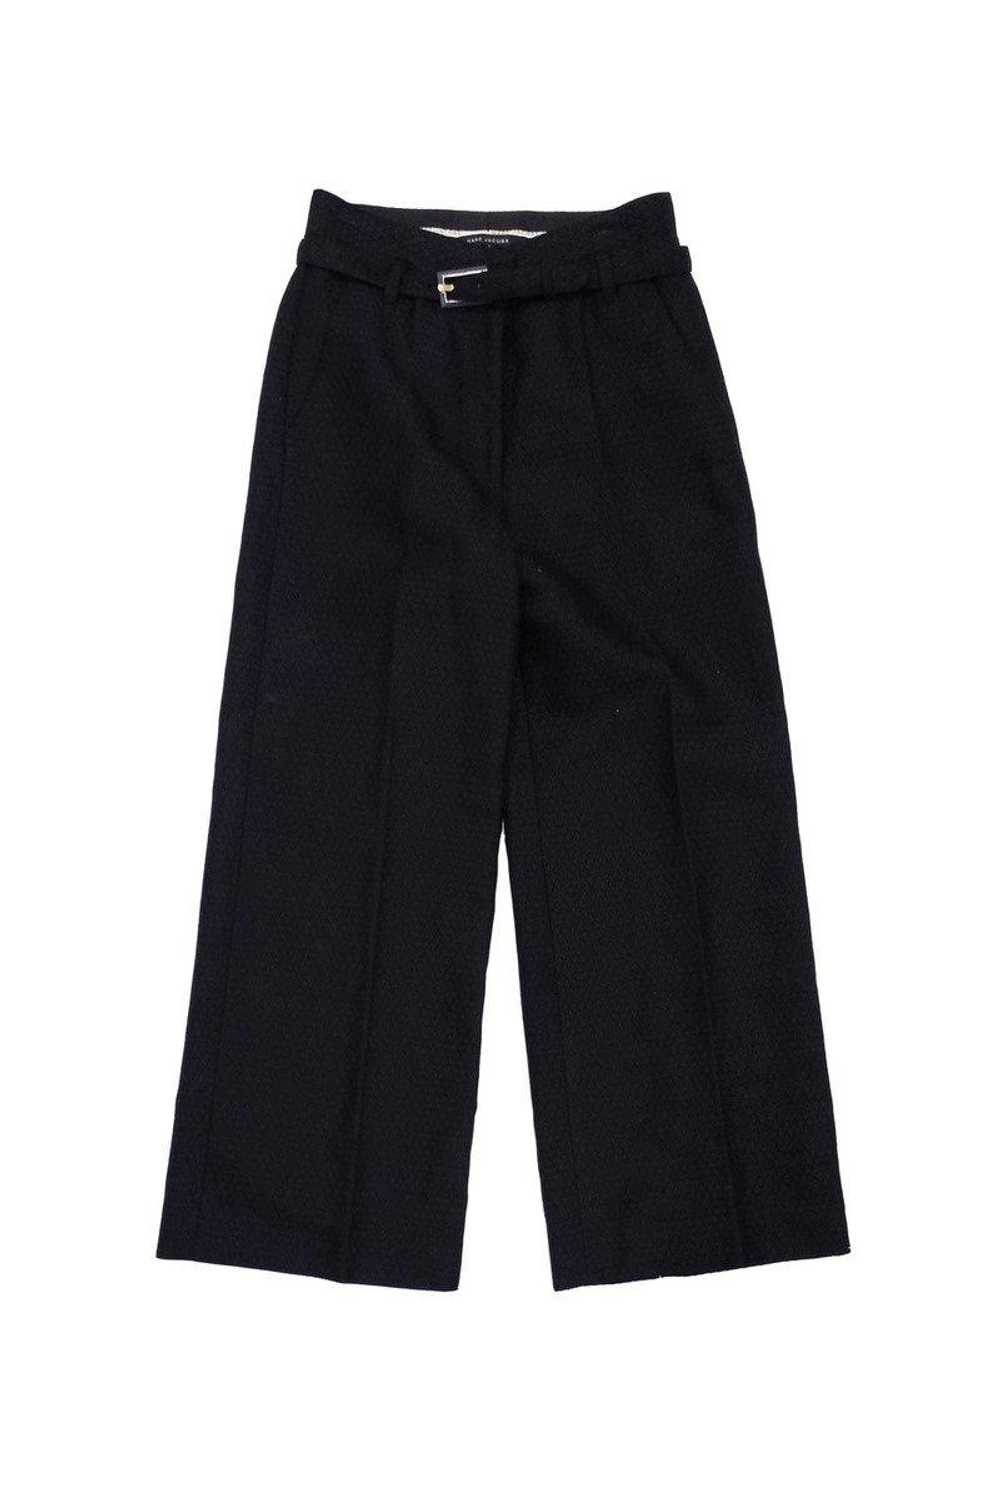 Marc Jacobs - Black Cotton Blend Trousers Sz 2 - image 2